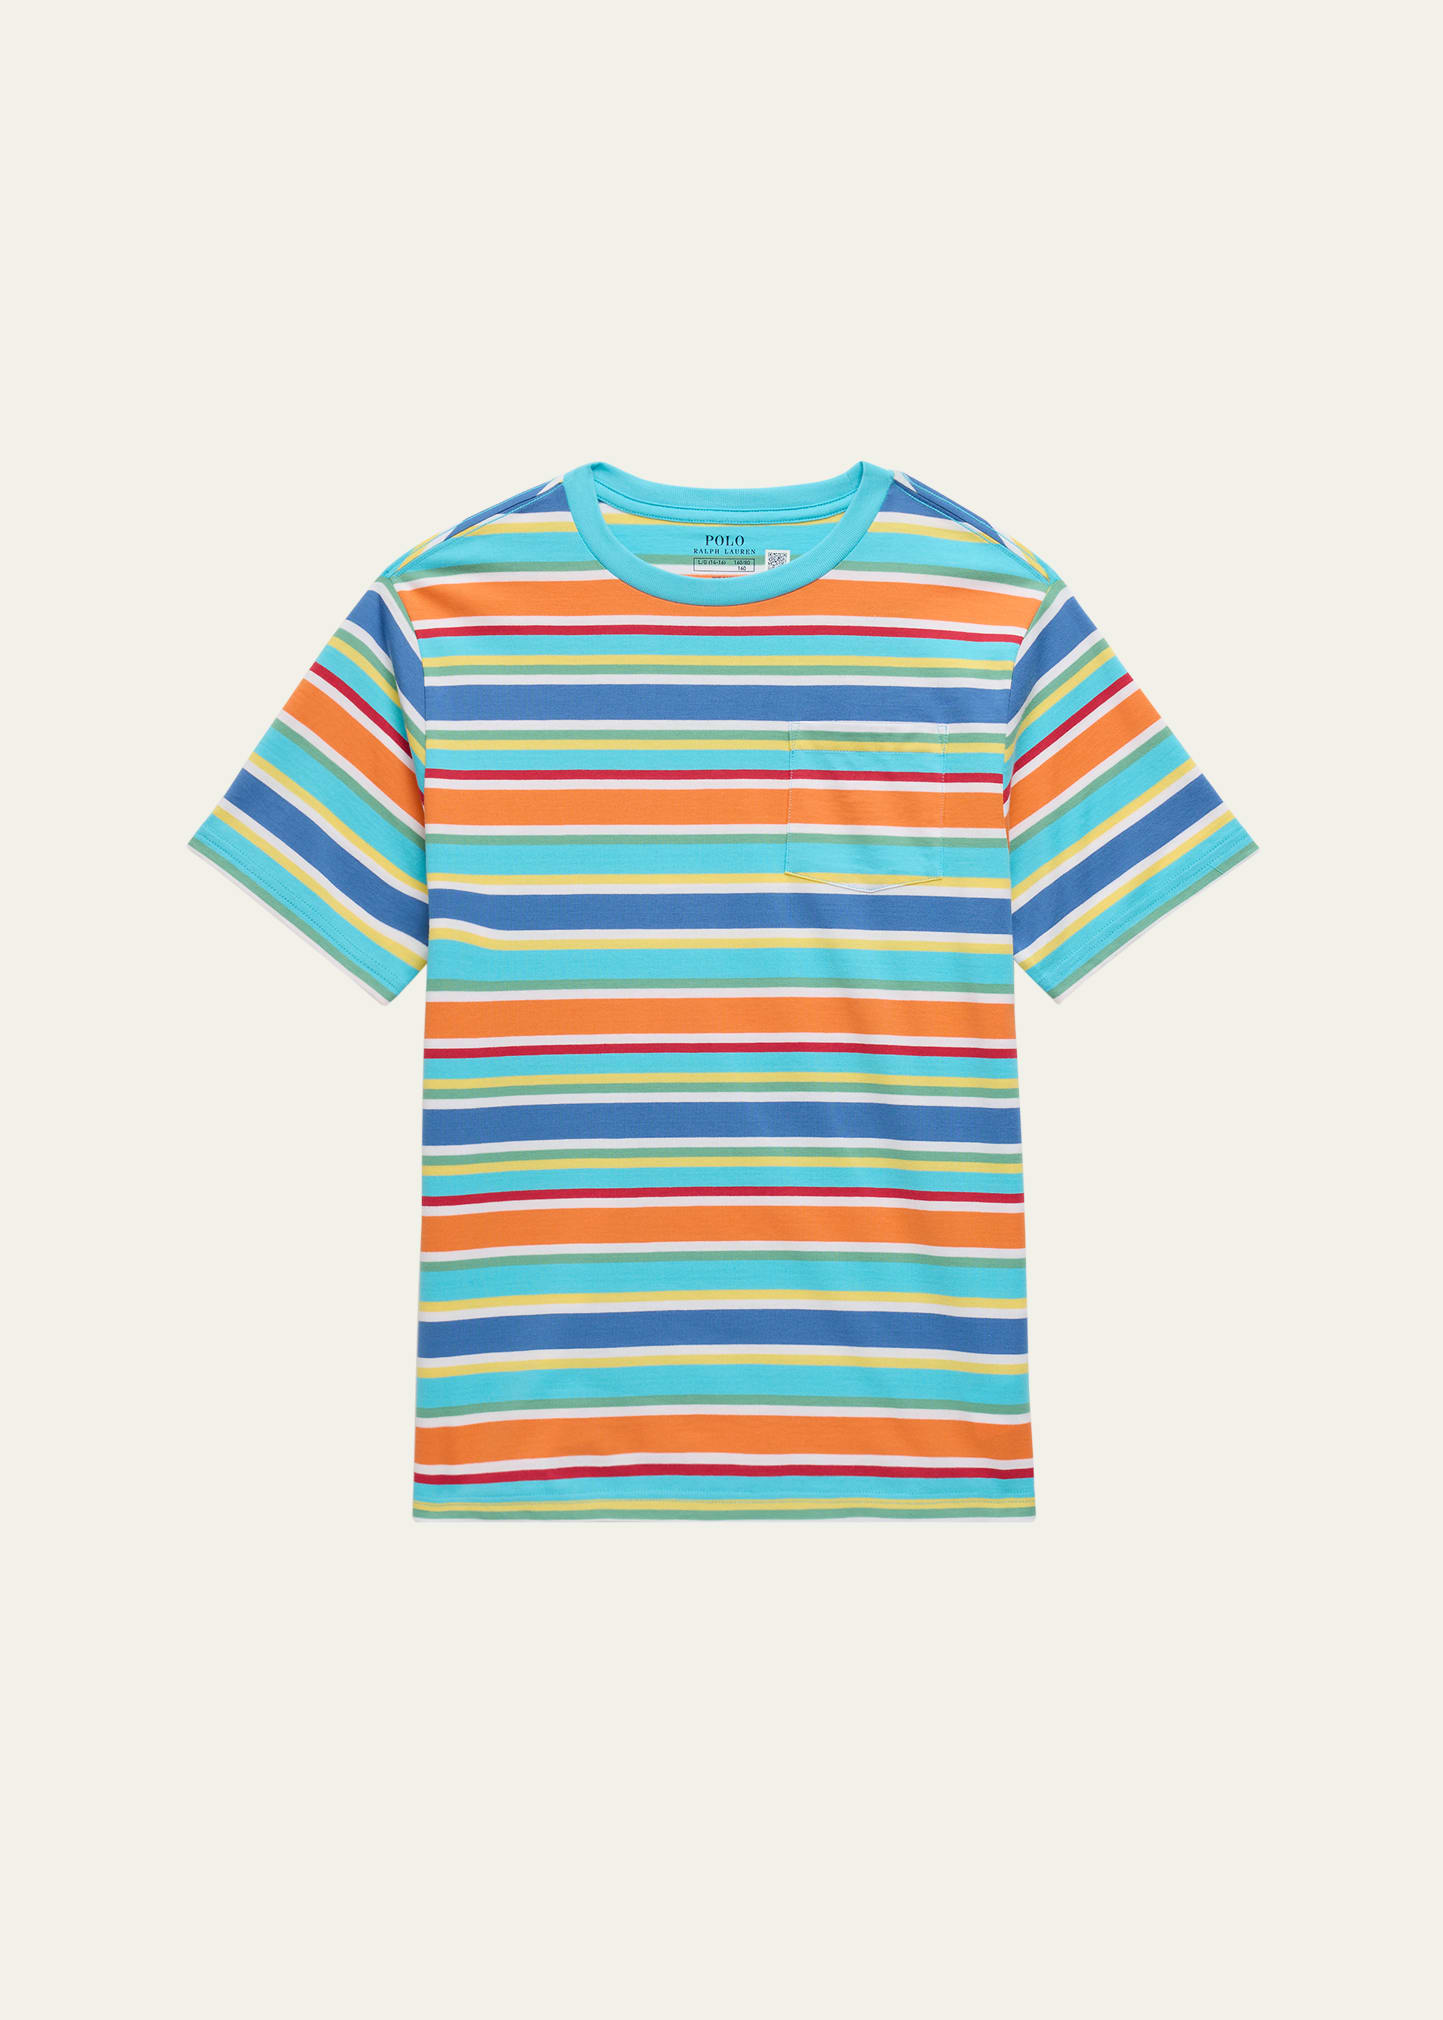 Boy's Multicolor Striped T-Shirt, Size S-XL